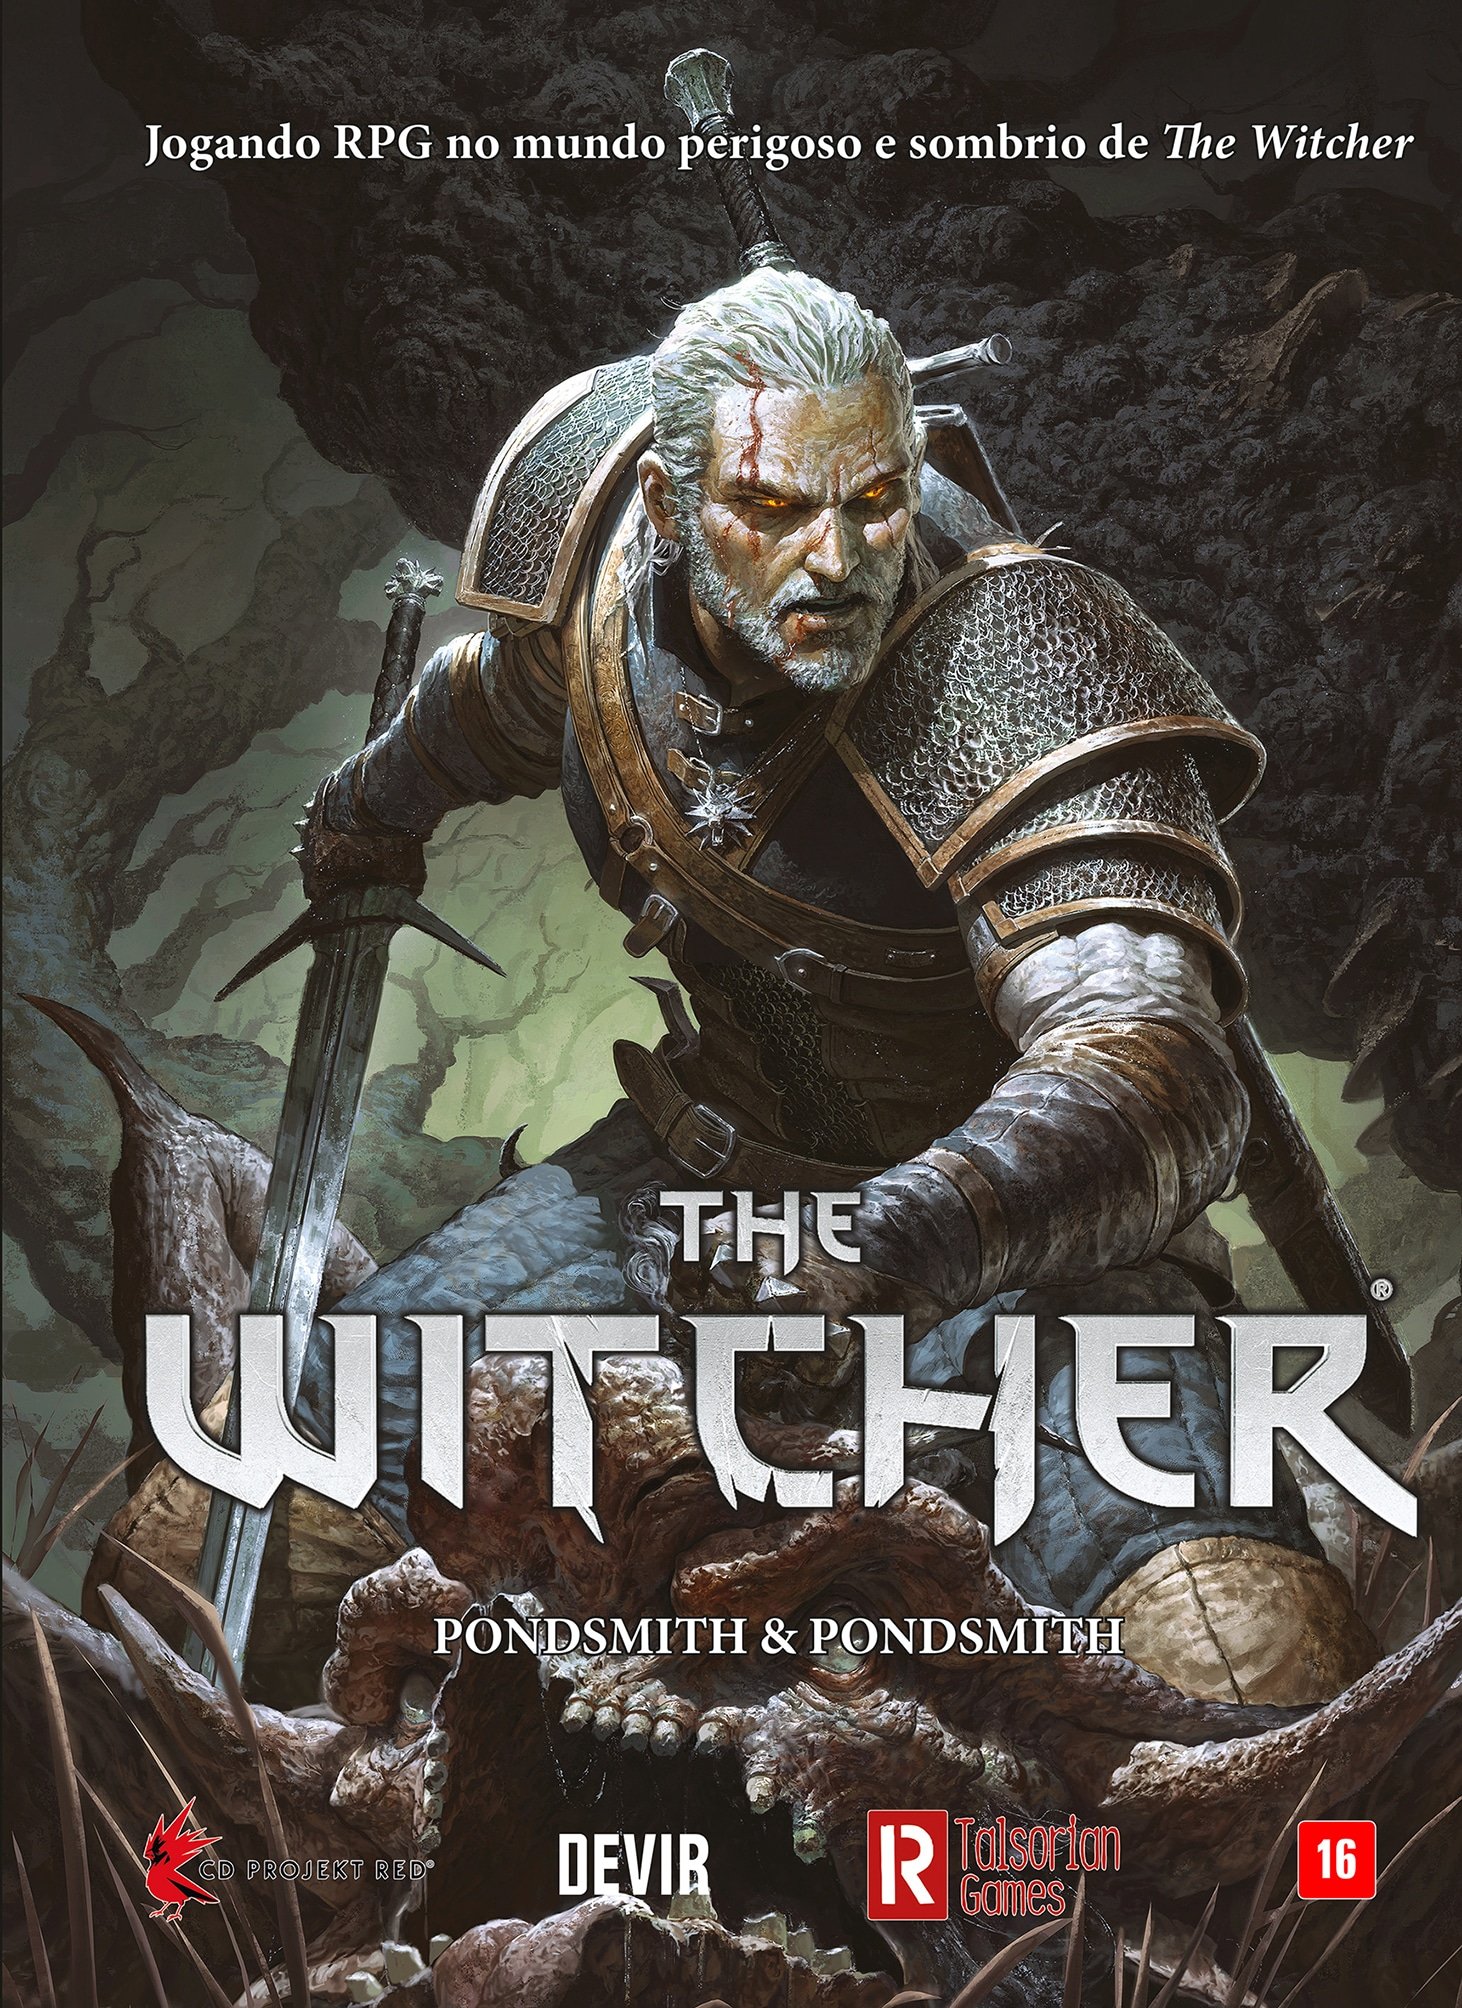 RPG de mesa baseado em The Witcher será lançado em janeiro no Brasil